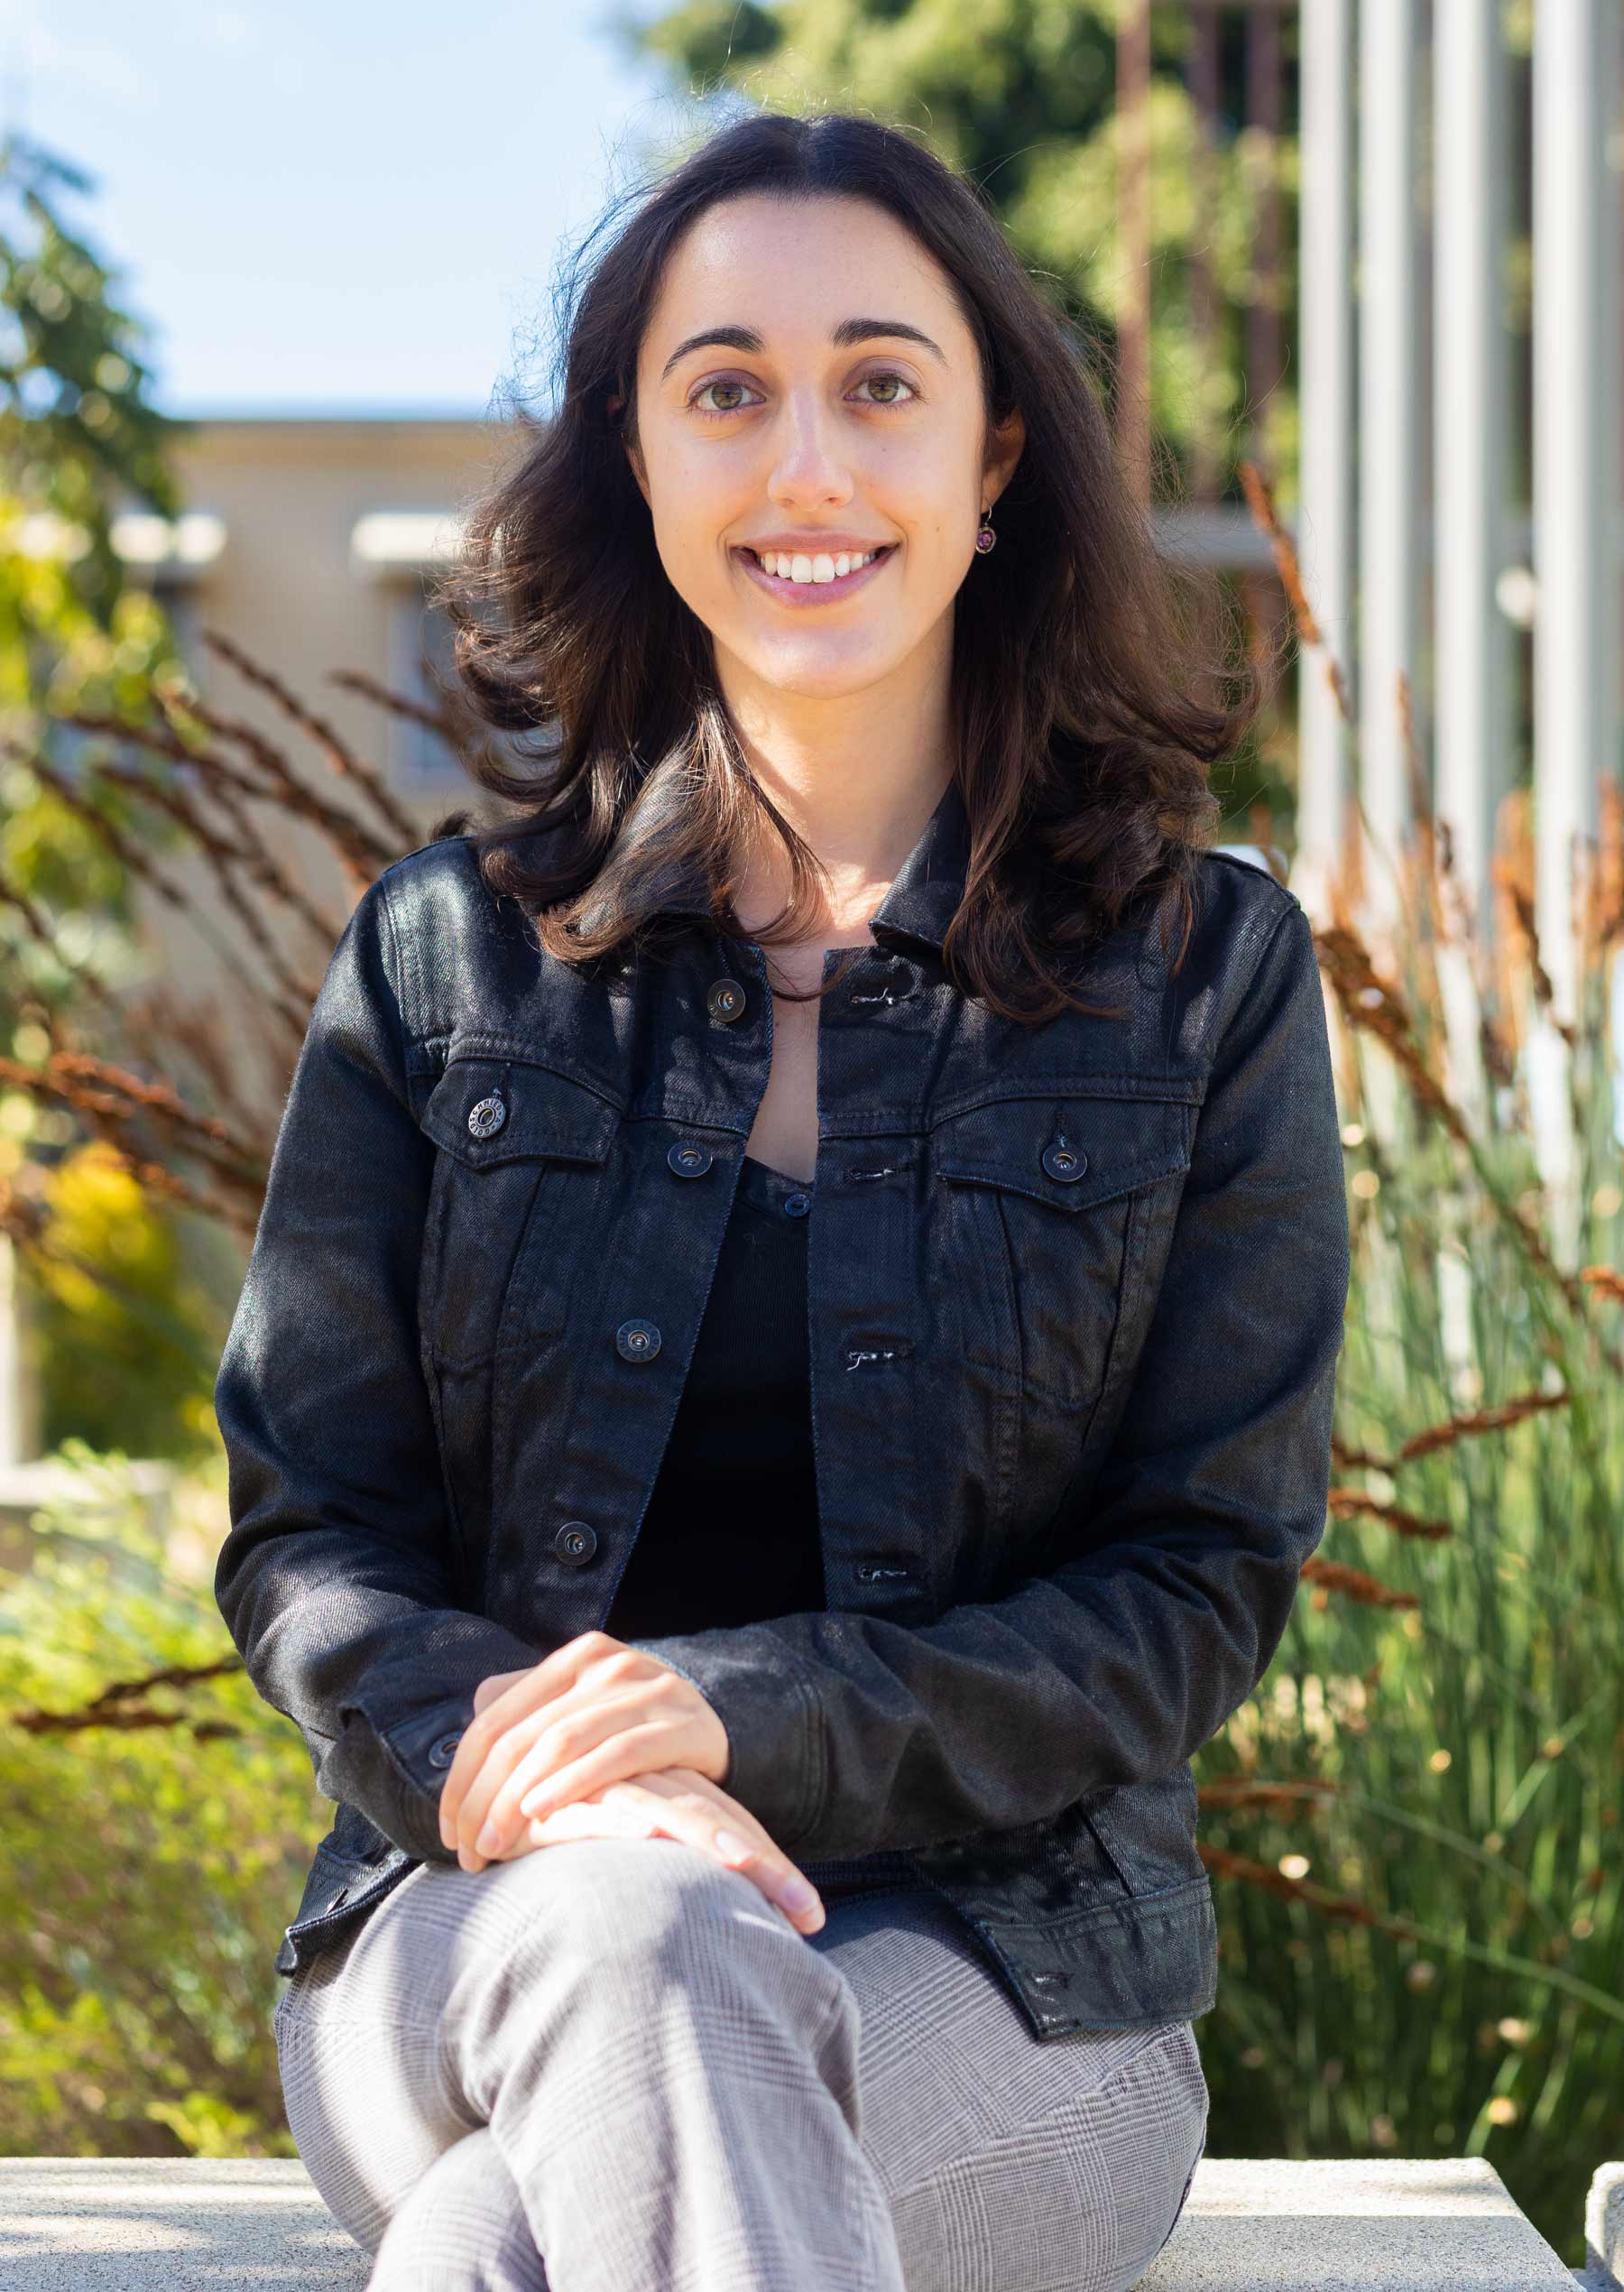 Sharon Levy - a Ph.D. candidate at UC Santa Barbara